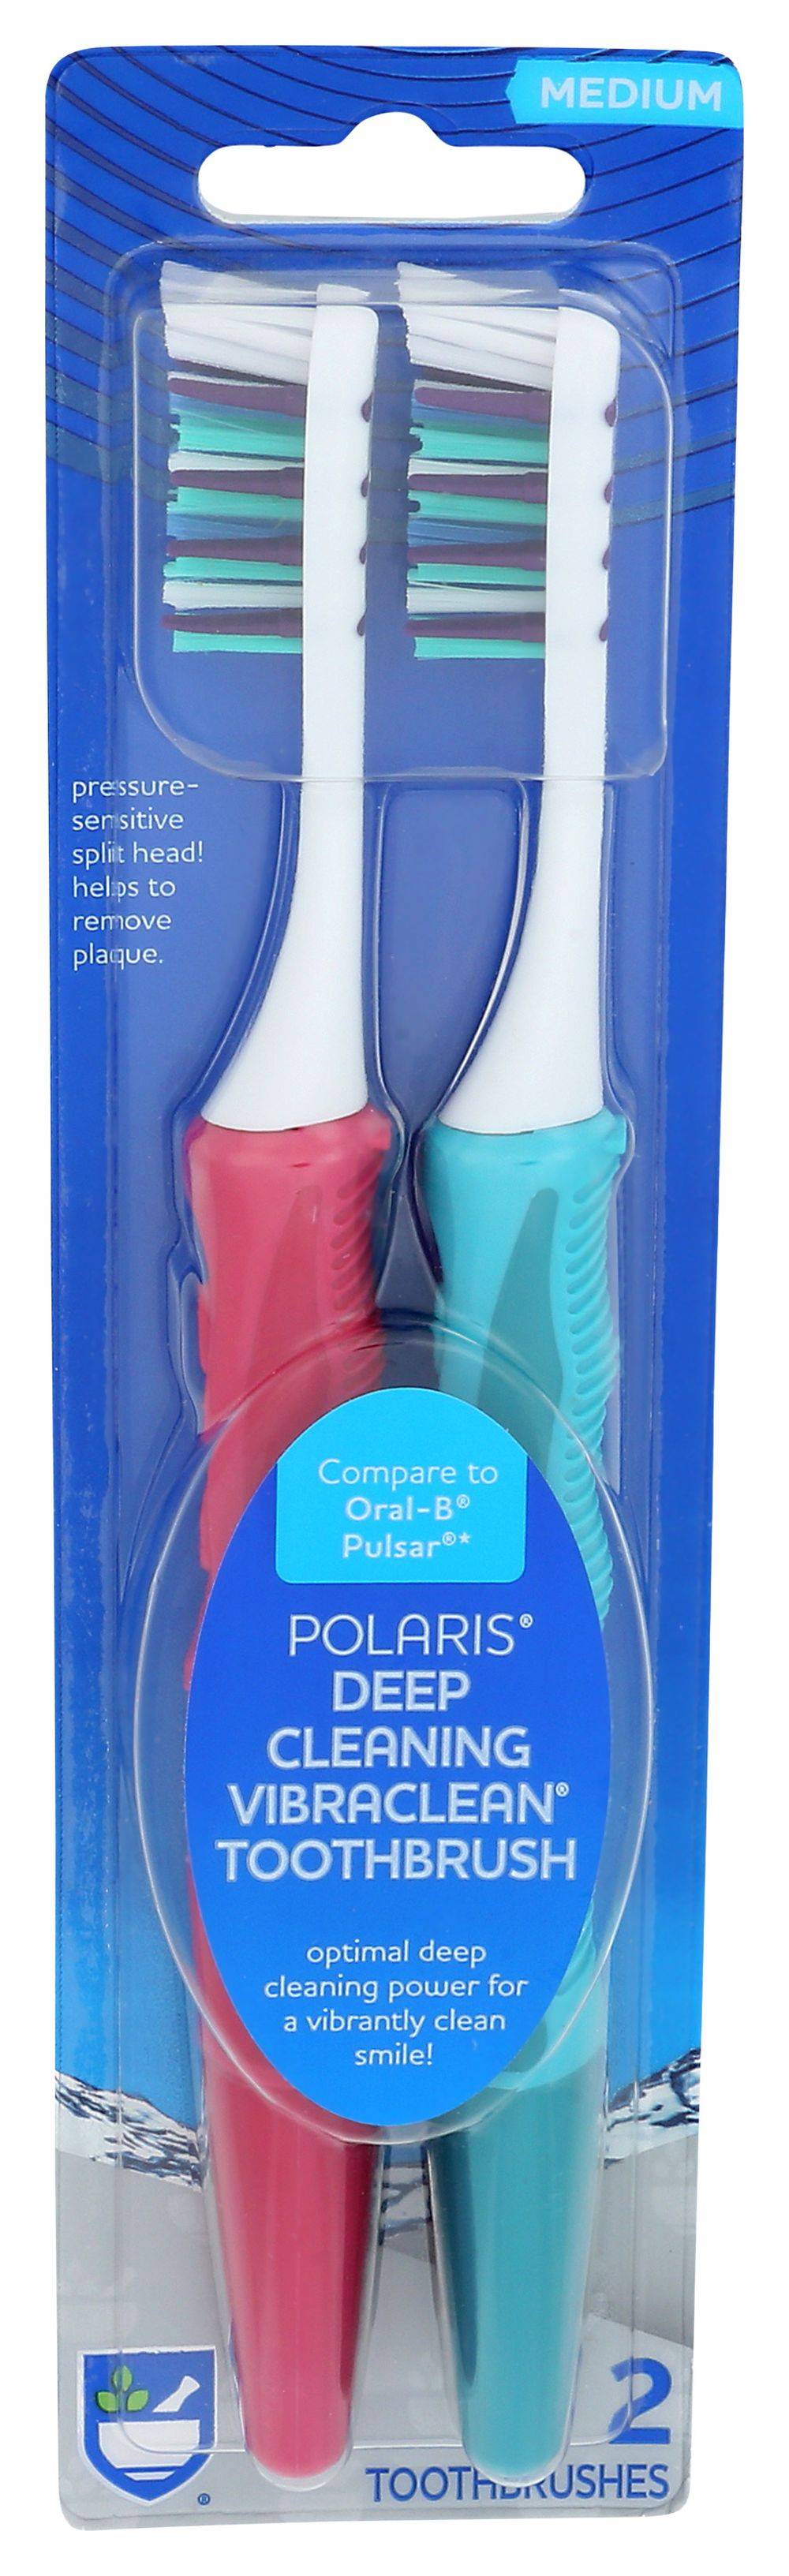 Rite Aid Polaris Power Toothbrush (medium)